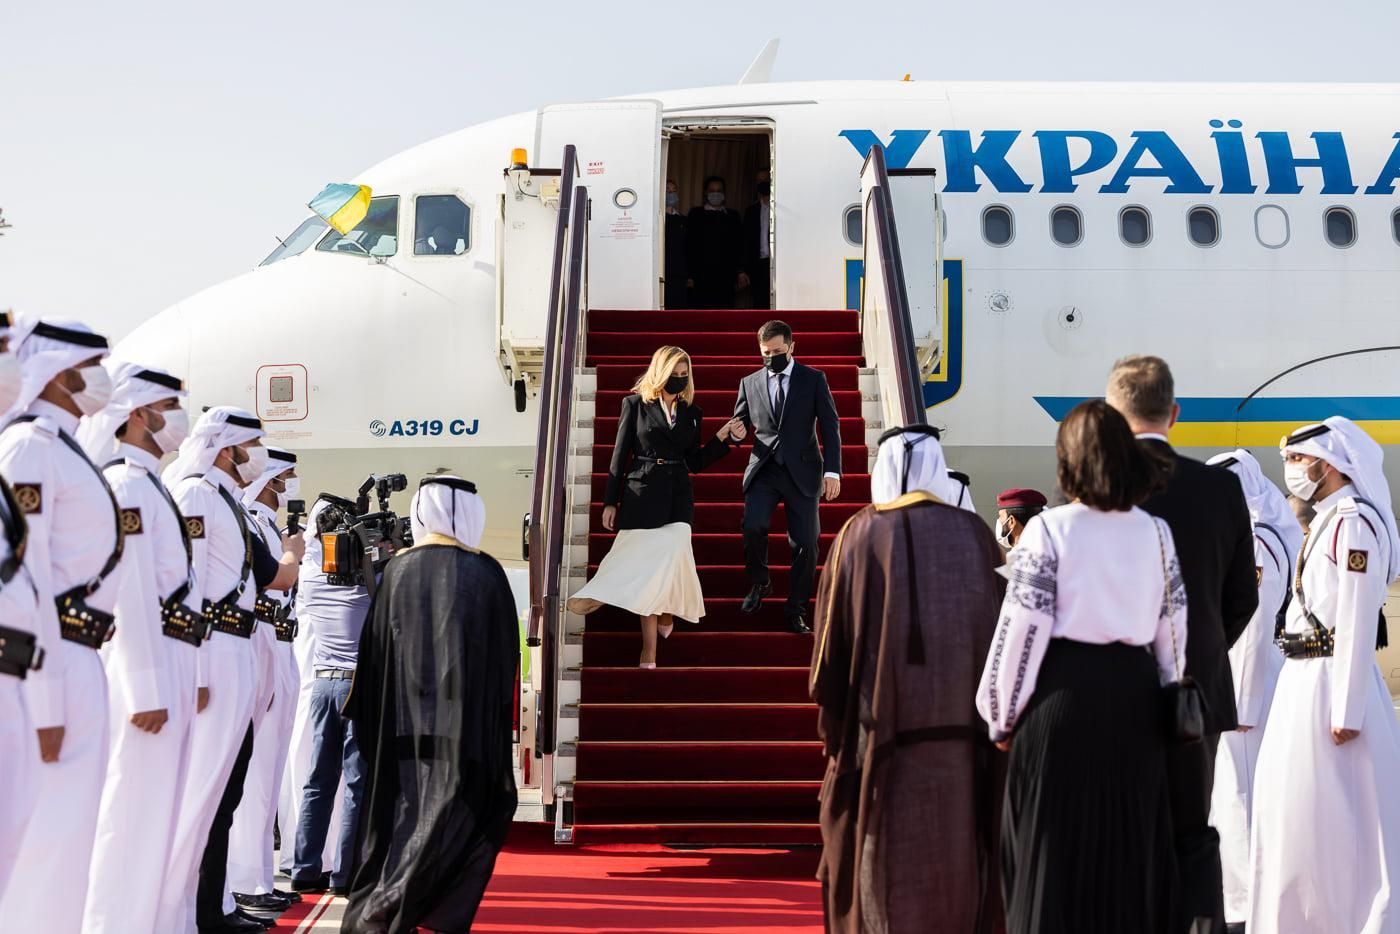 Елена Зеленская появилась в элегантном жакете для визита в Катар фото